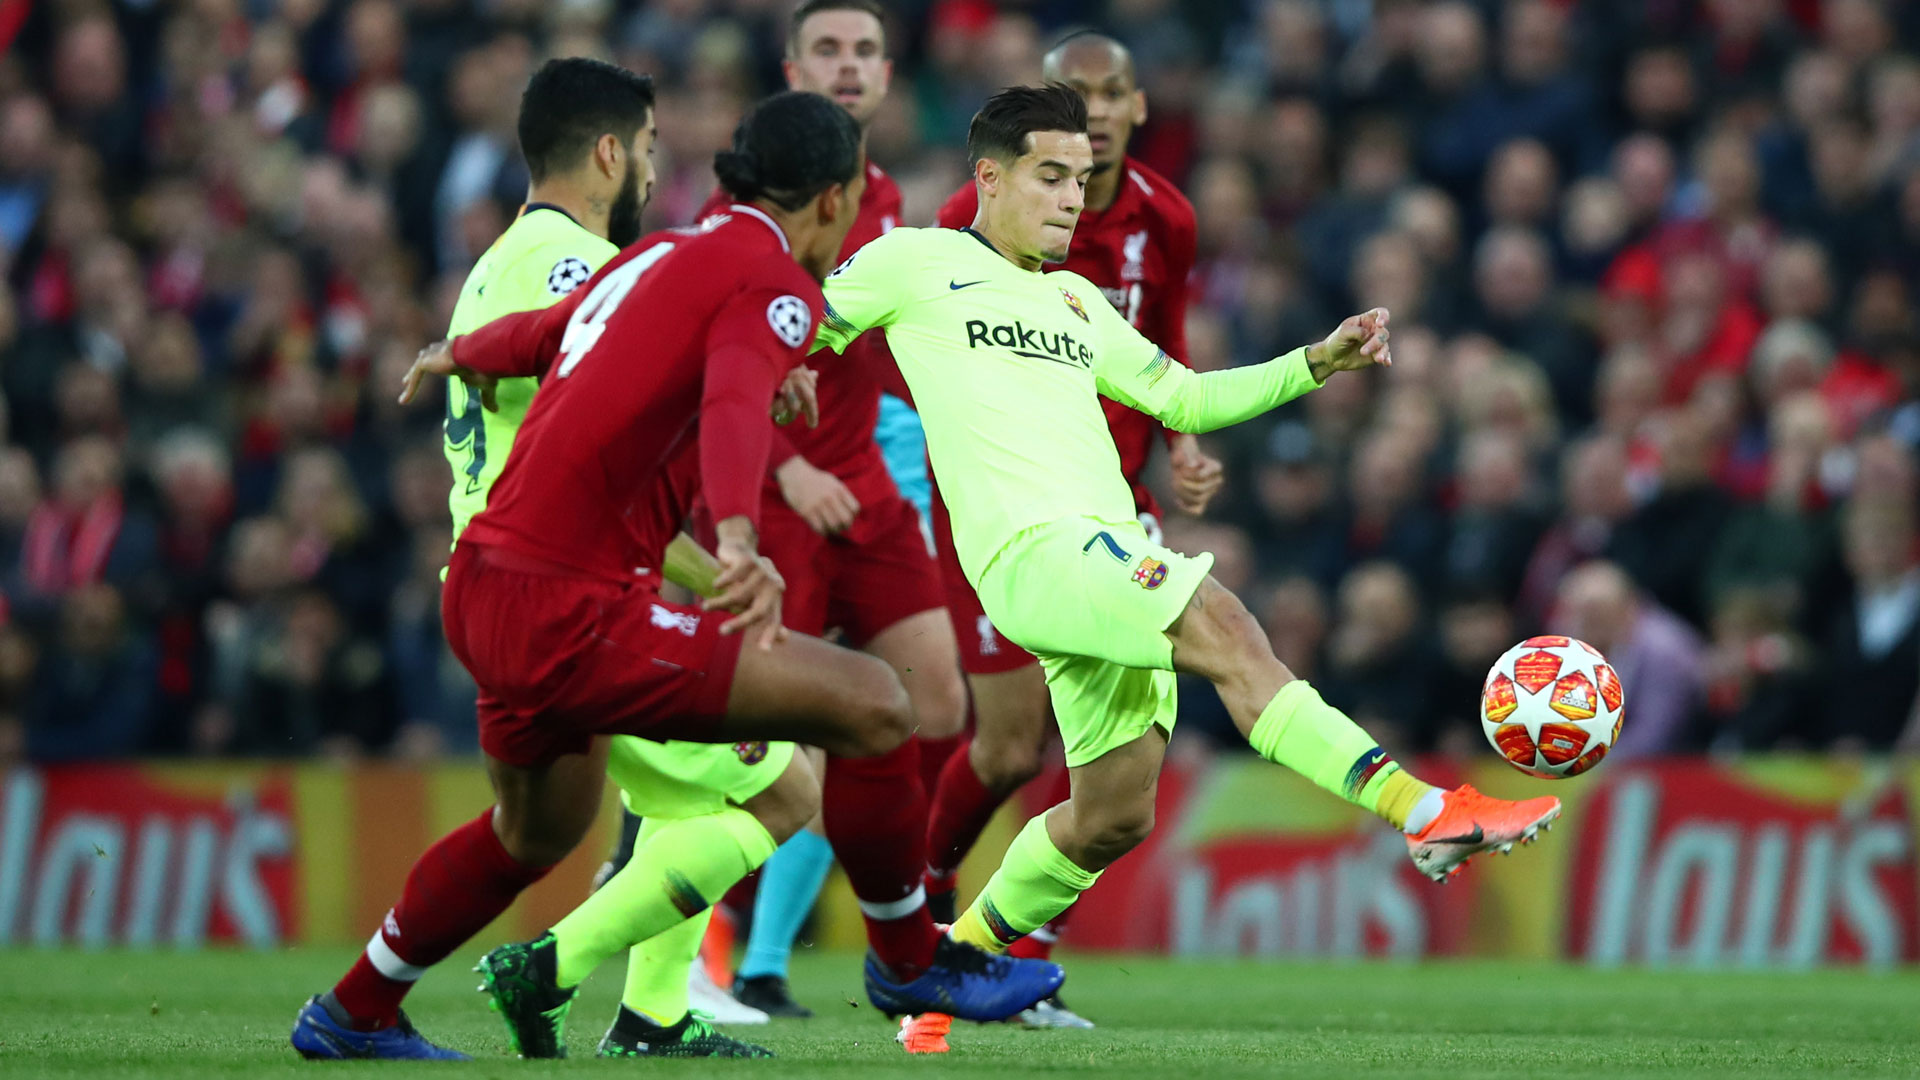 Thua Liverpool, Barca tìm cách bán đứt 'bom xịt' cho Man Utd - Bóng Đá